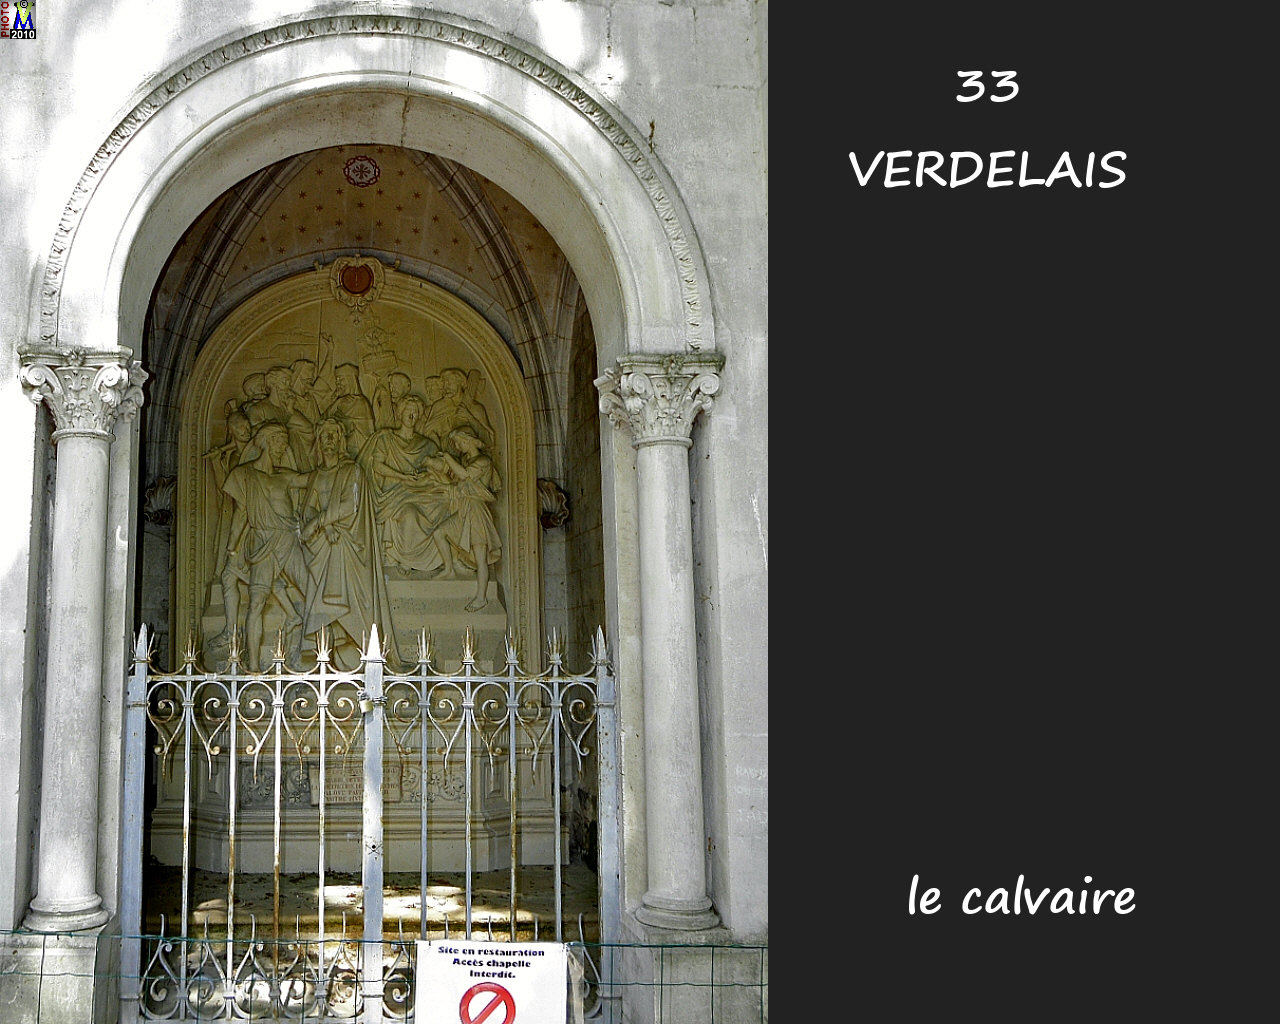 33VERDELAIS_calvaire_112.jpg